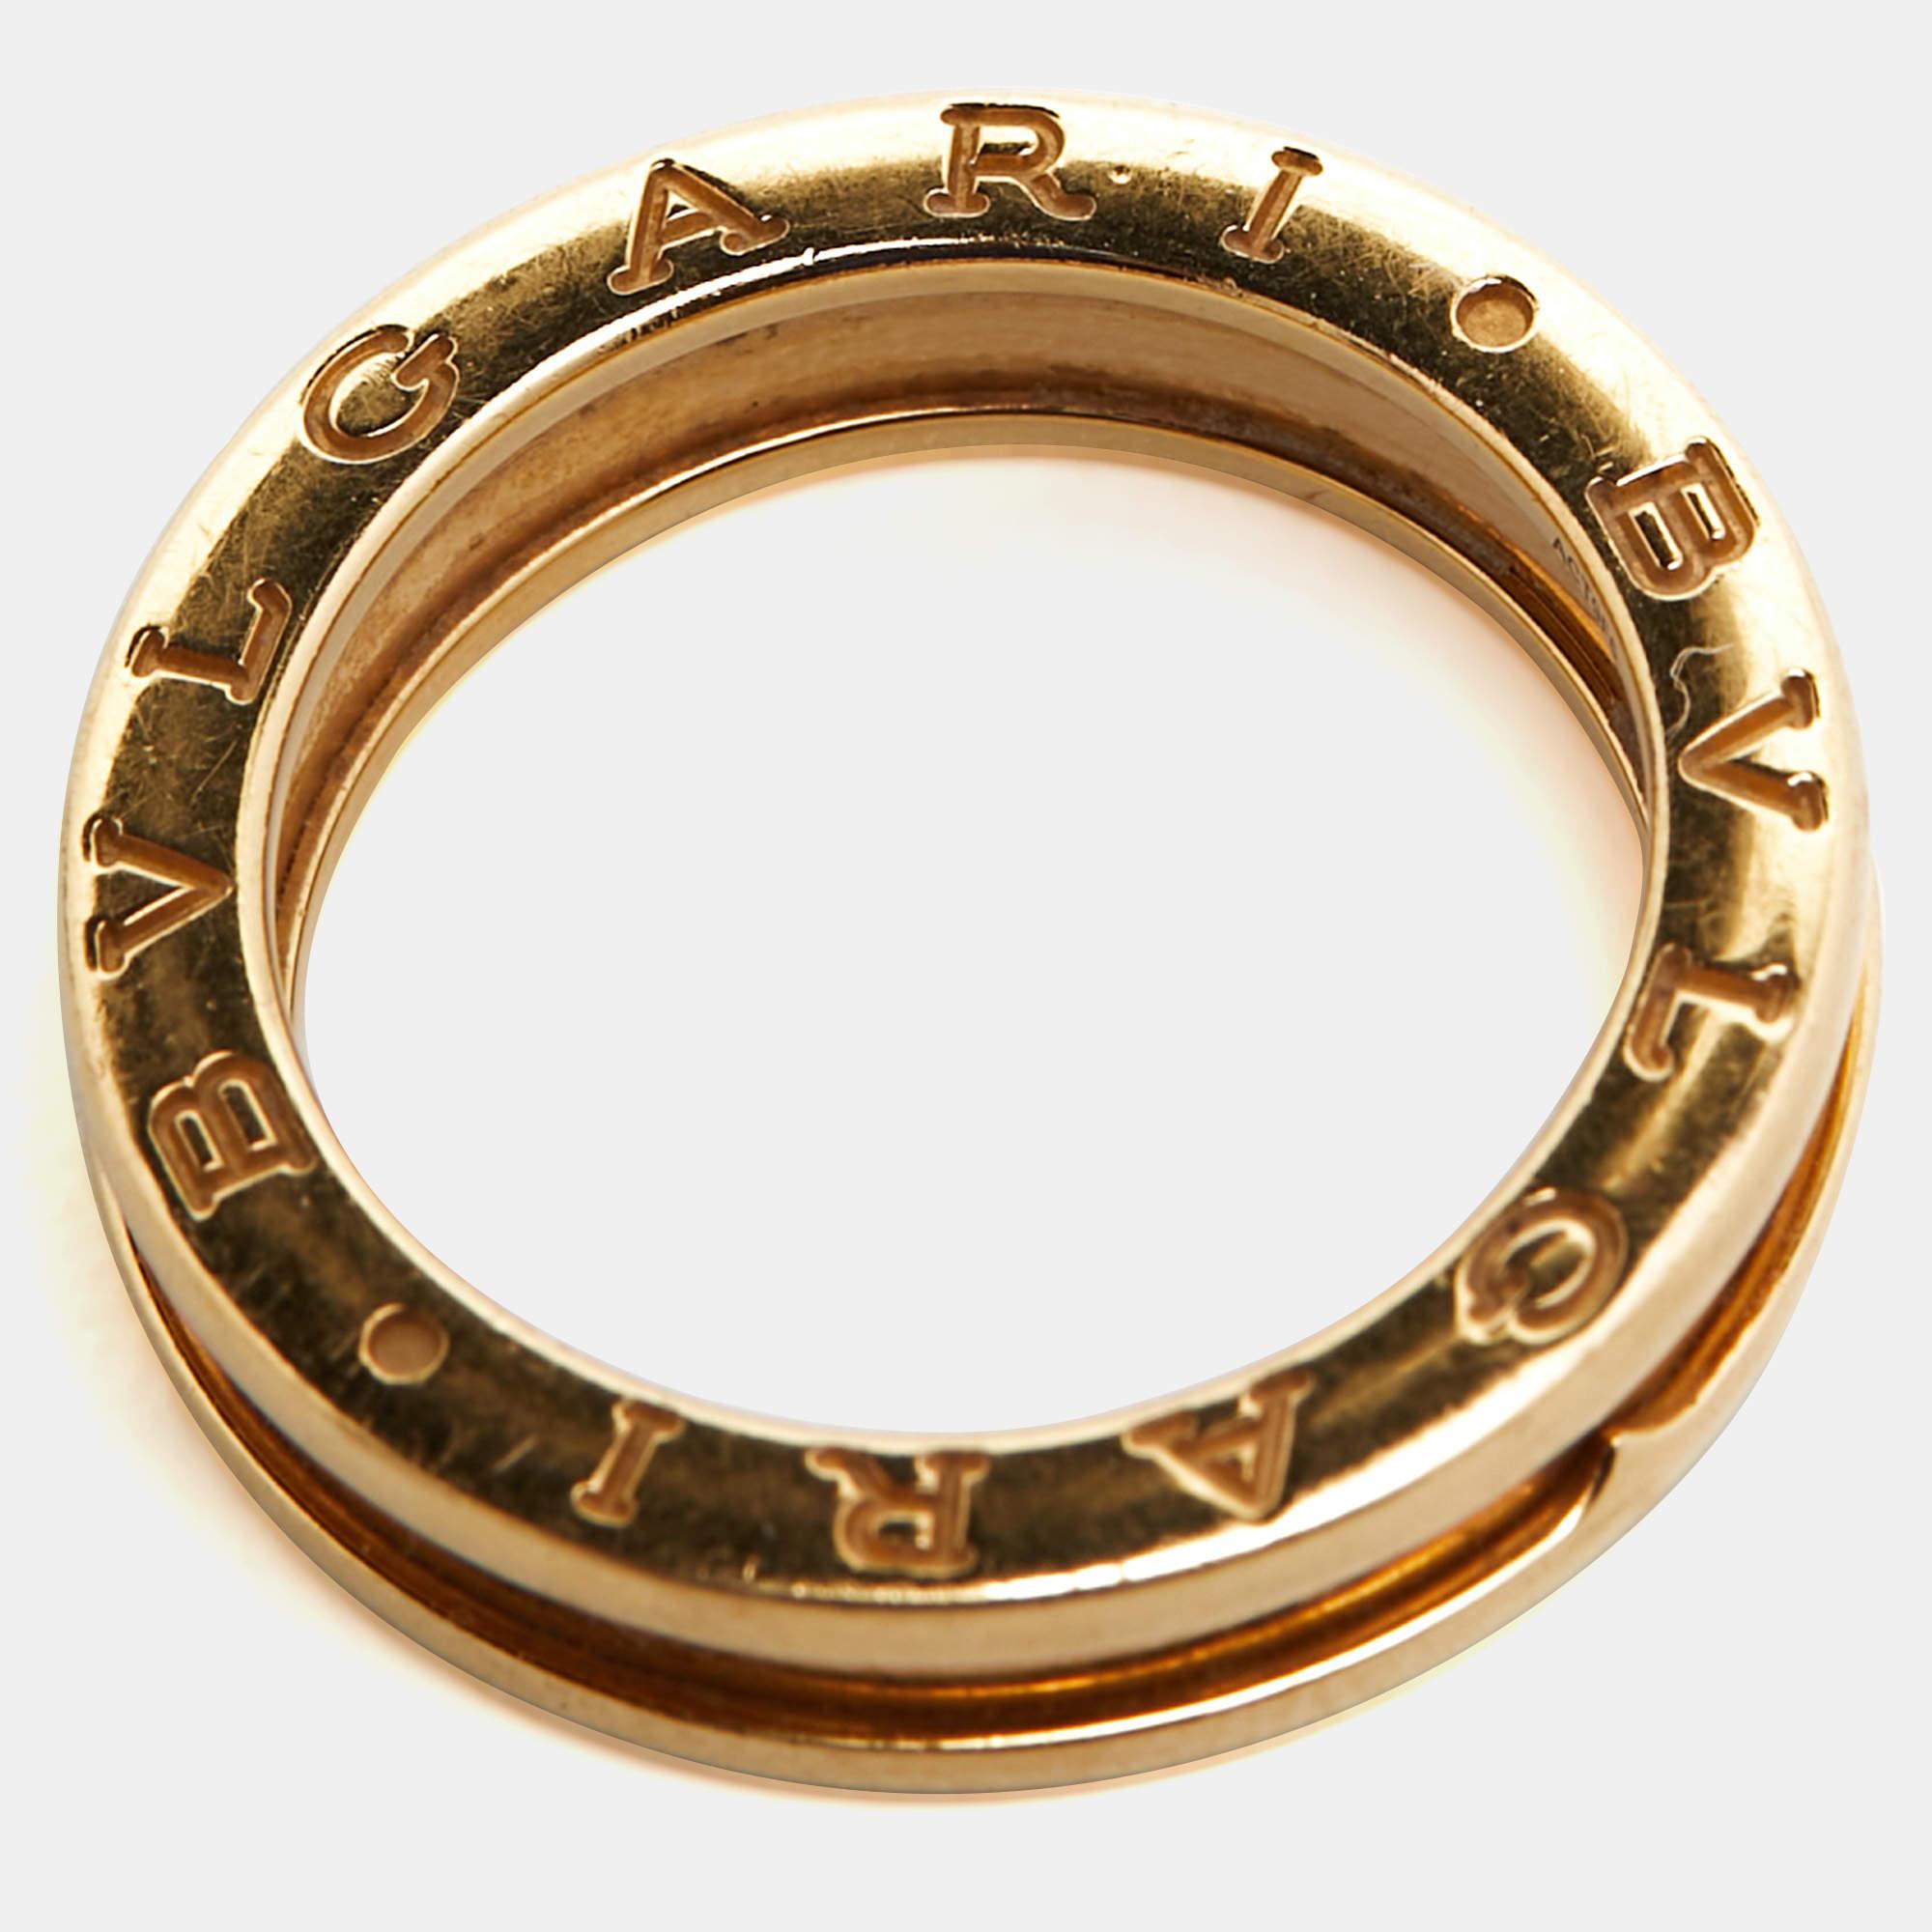 Bvlgari B.Zero1 1-Band 18k Yellow Gold Ring Size 55 In Fair Condition For Sale In Dubai, Al Qouz 2